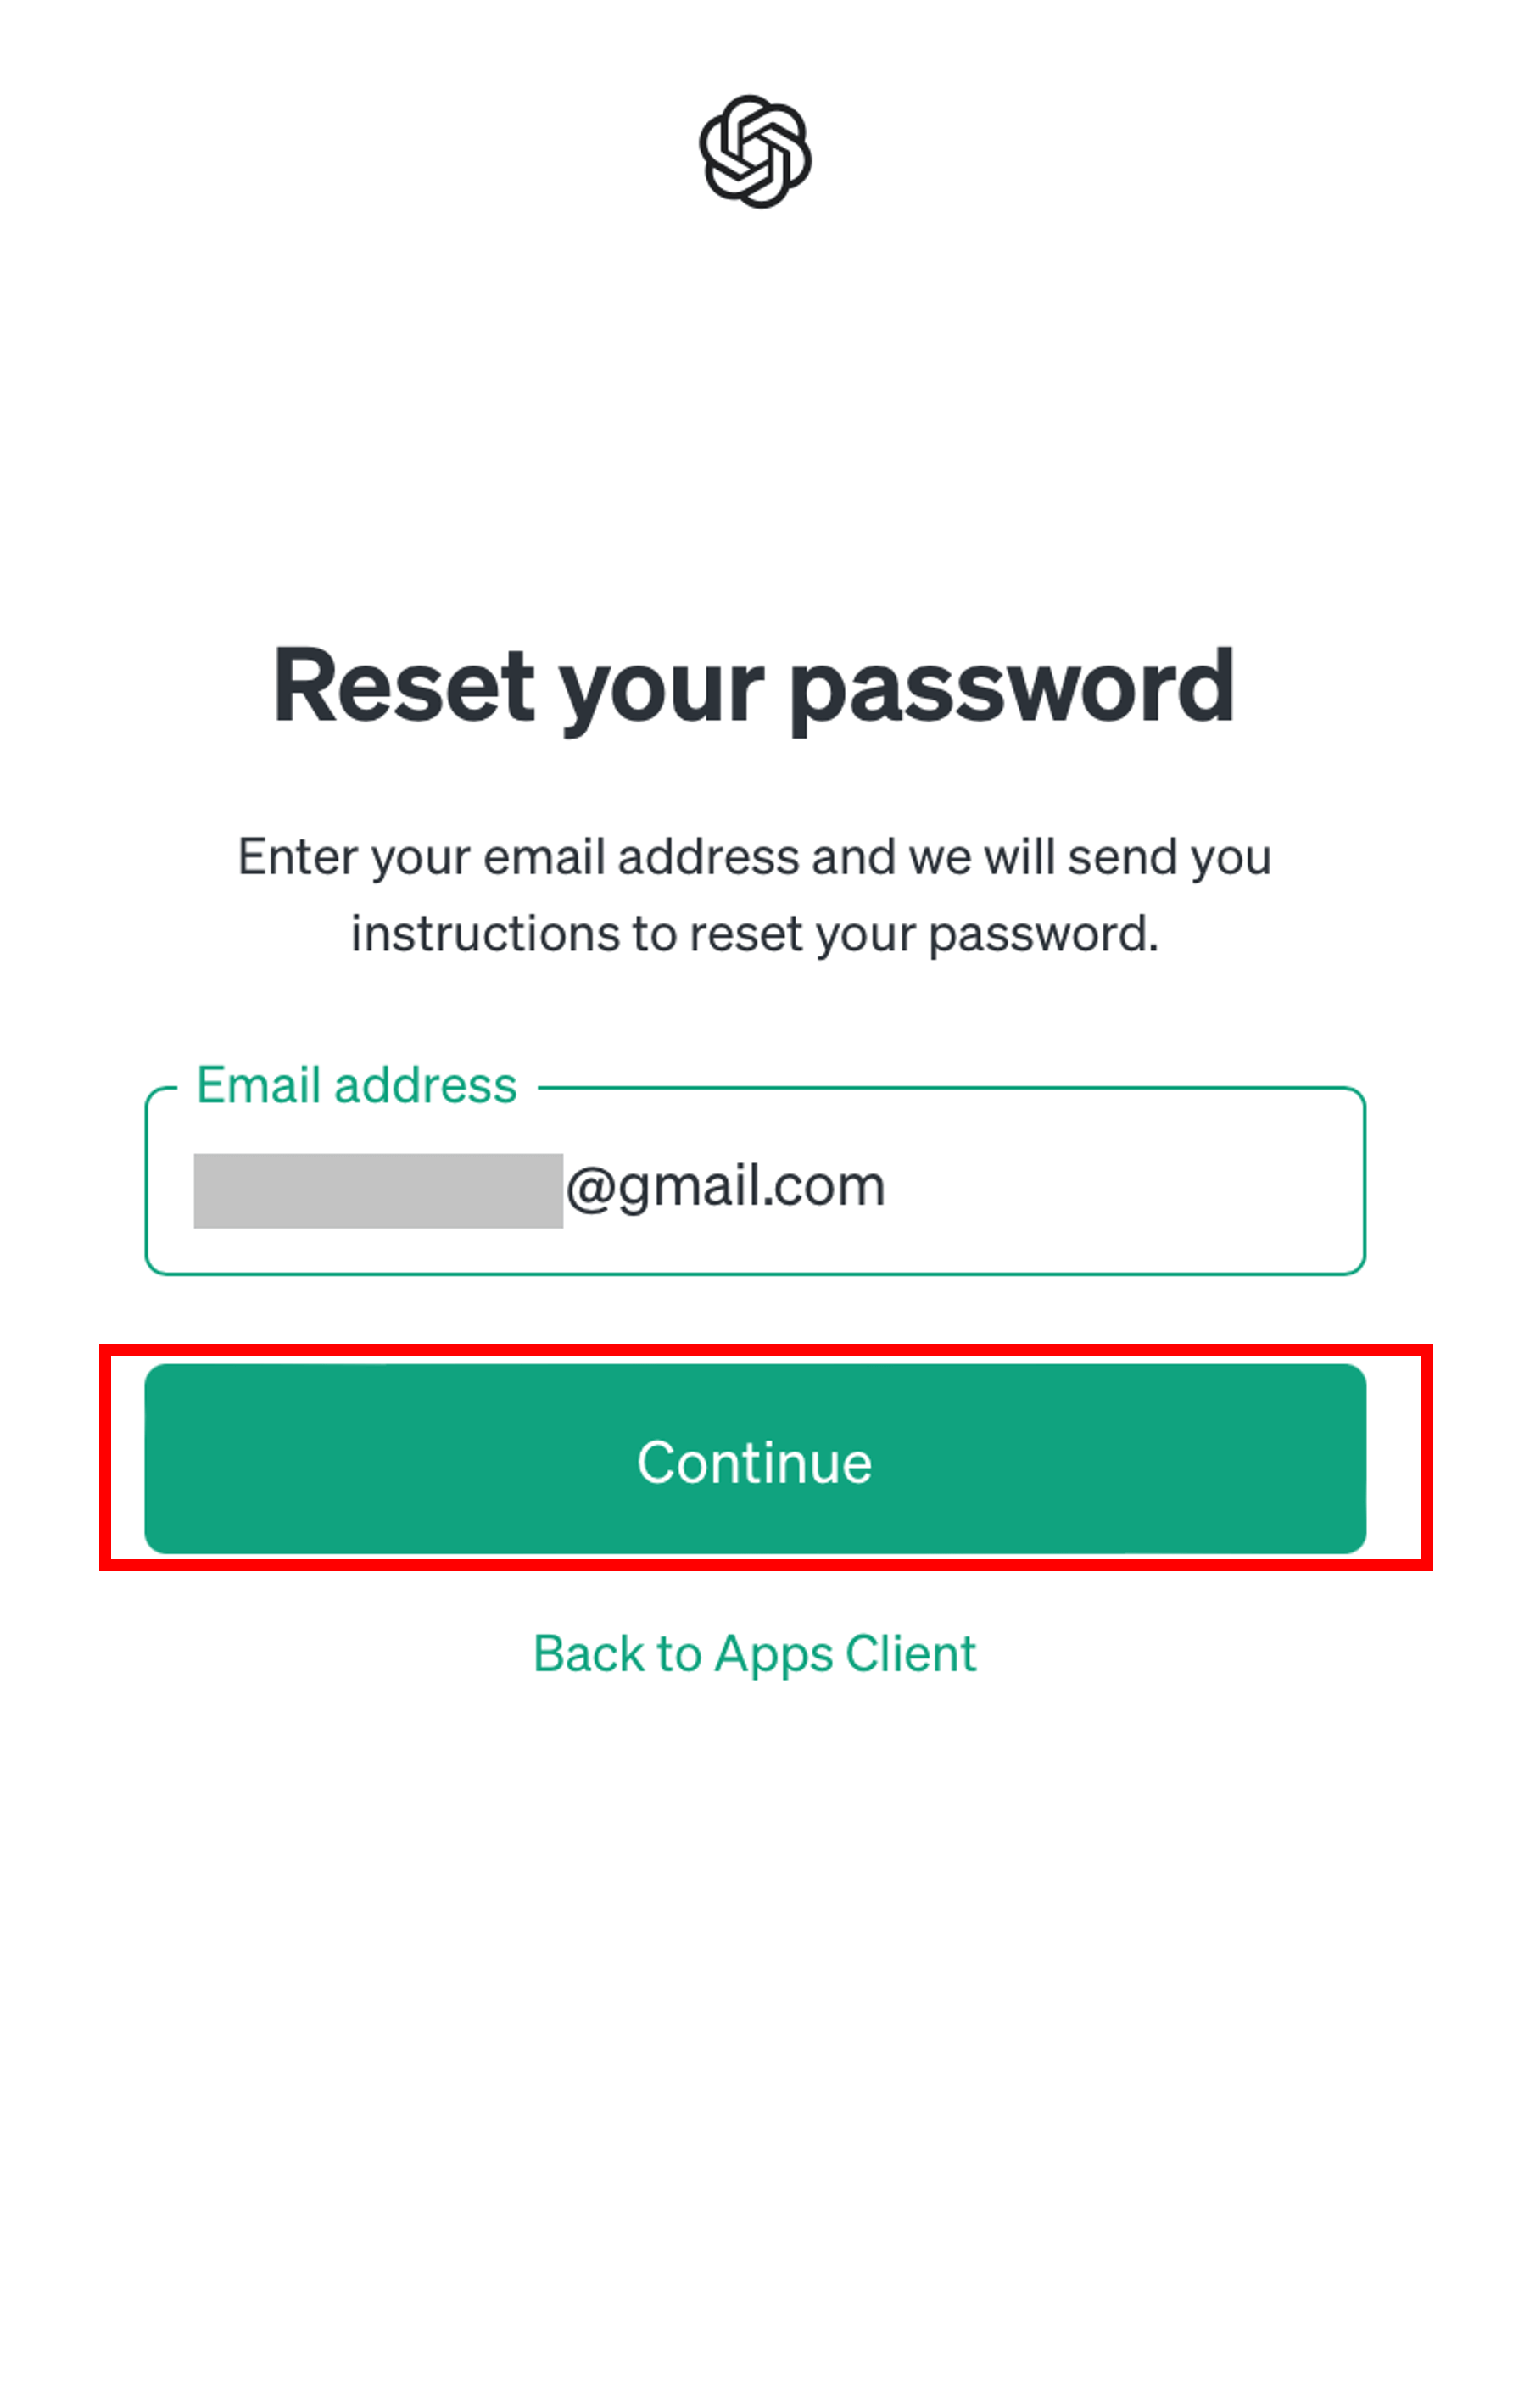 Reset your passwordの画面でContinueボタンをタップする場面のスクリーンショット